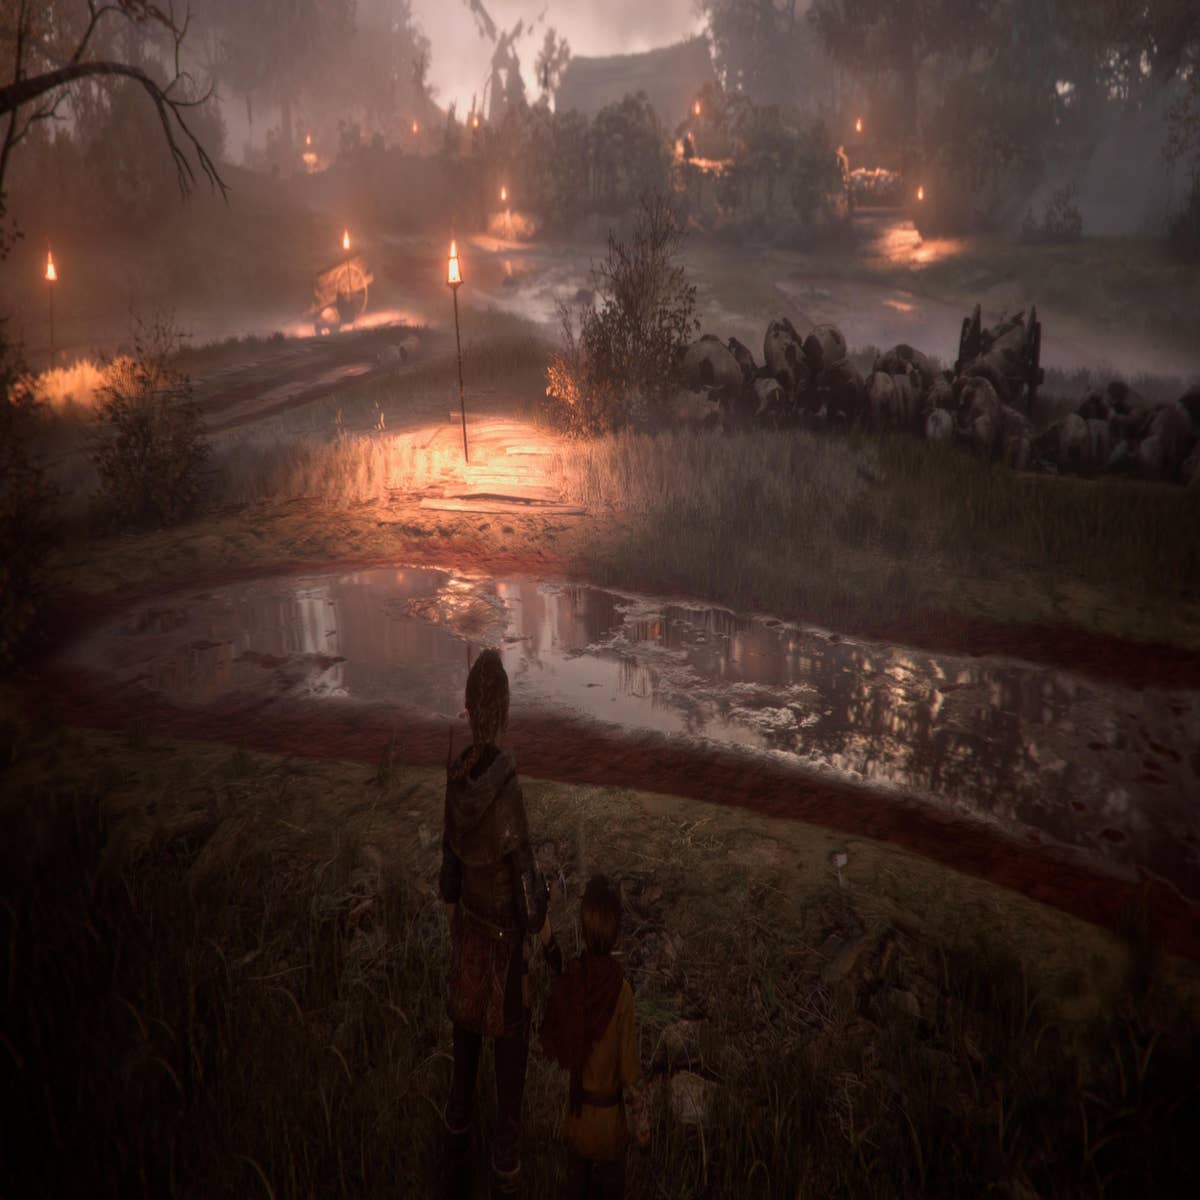 A Plague Tale: Innocence ganha ainda mais brilho na PS5 e Xbox Series